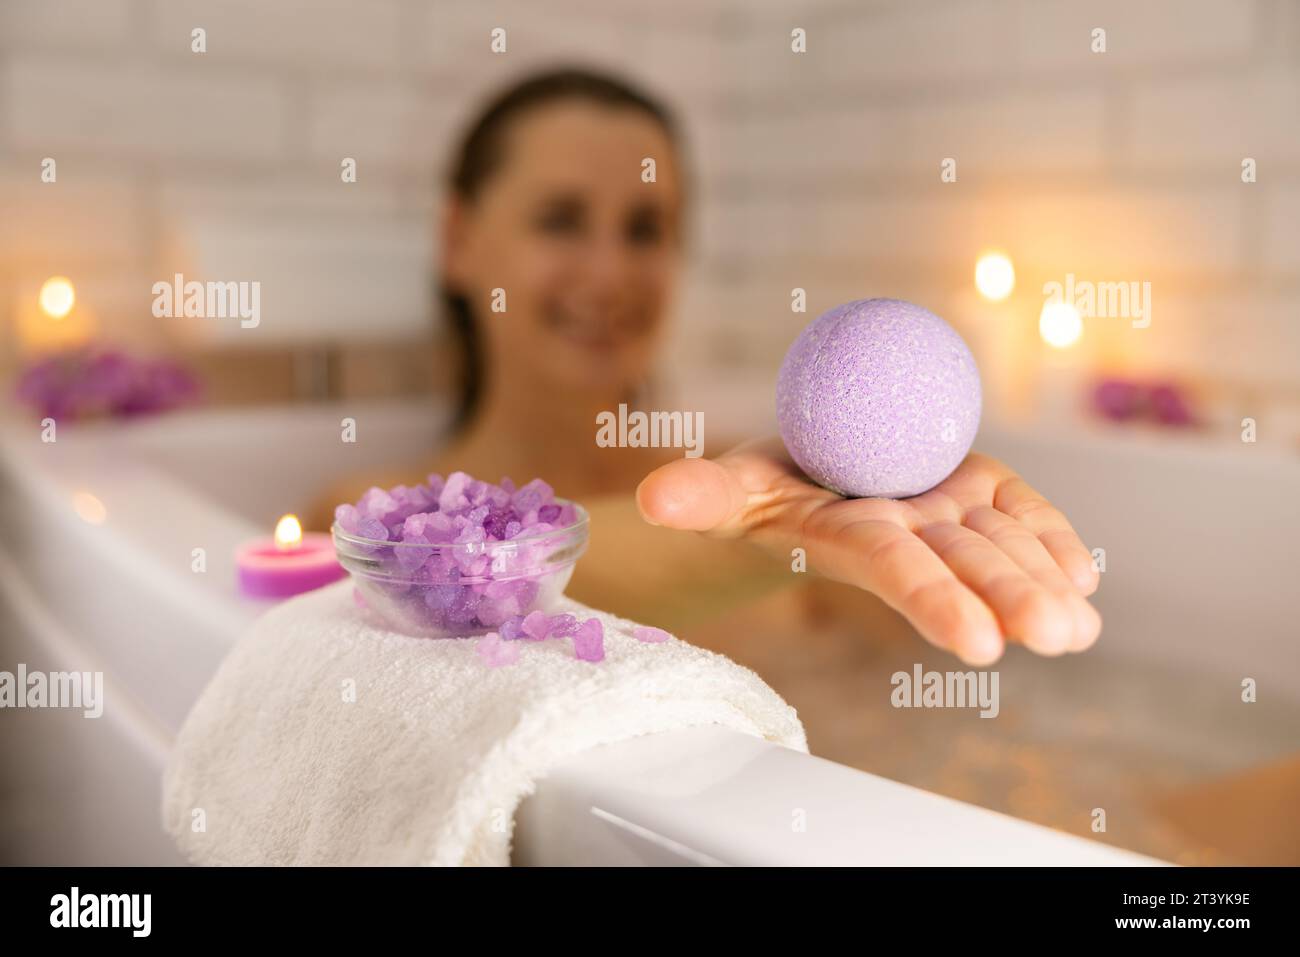 donna che si rilassa nella vasca da bagno a lume di candela e utilizza una bomba da bagno con cristalli di sale marino per idratare la pelle del corpo. centro benessere domestico, cura della pelle Foto Stock